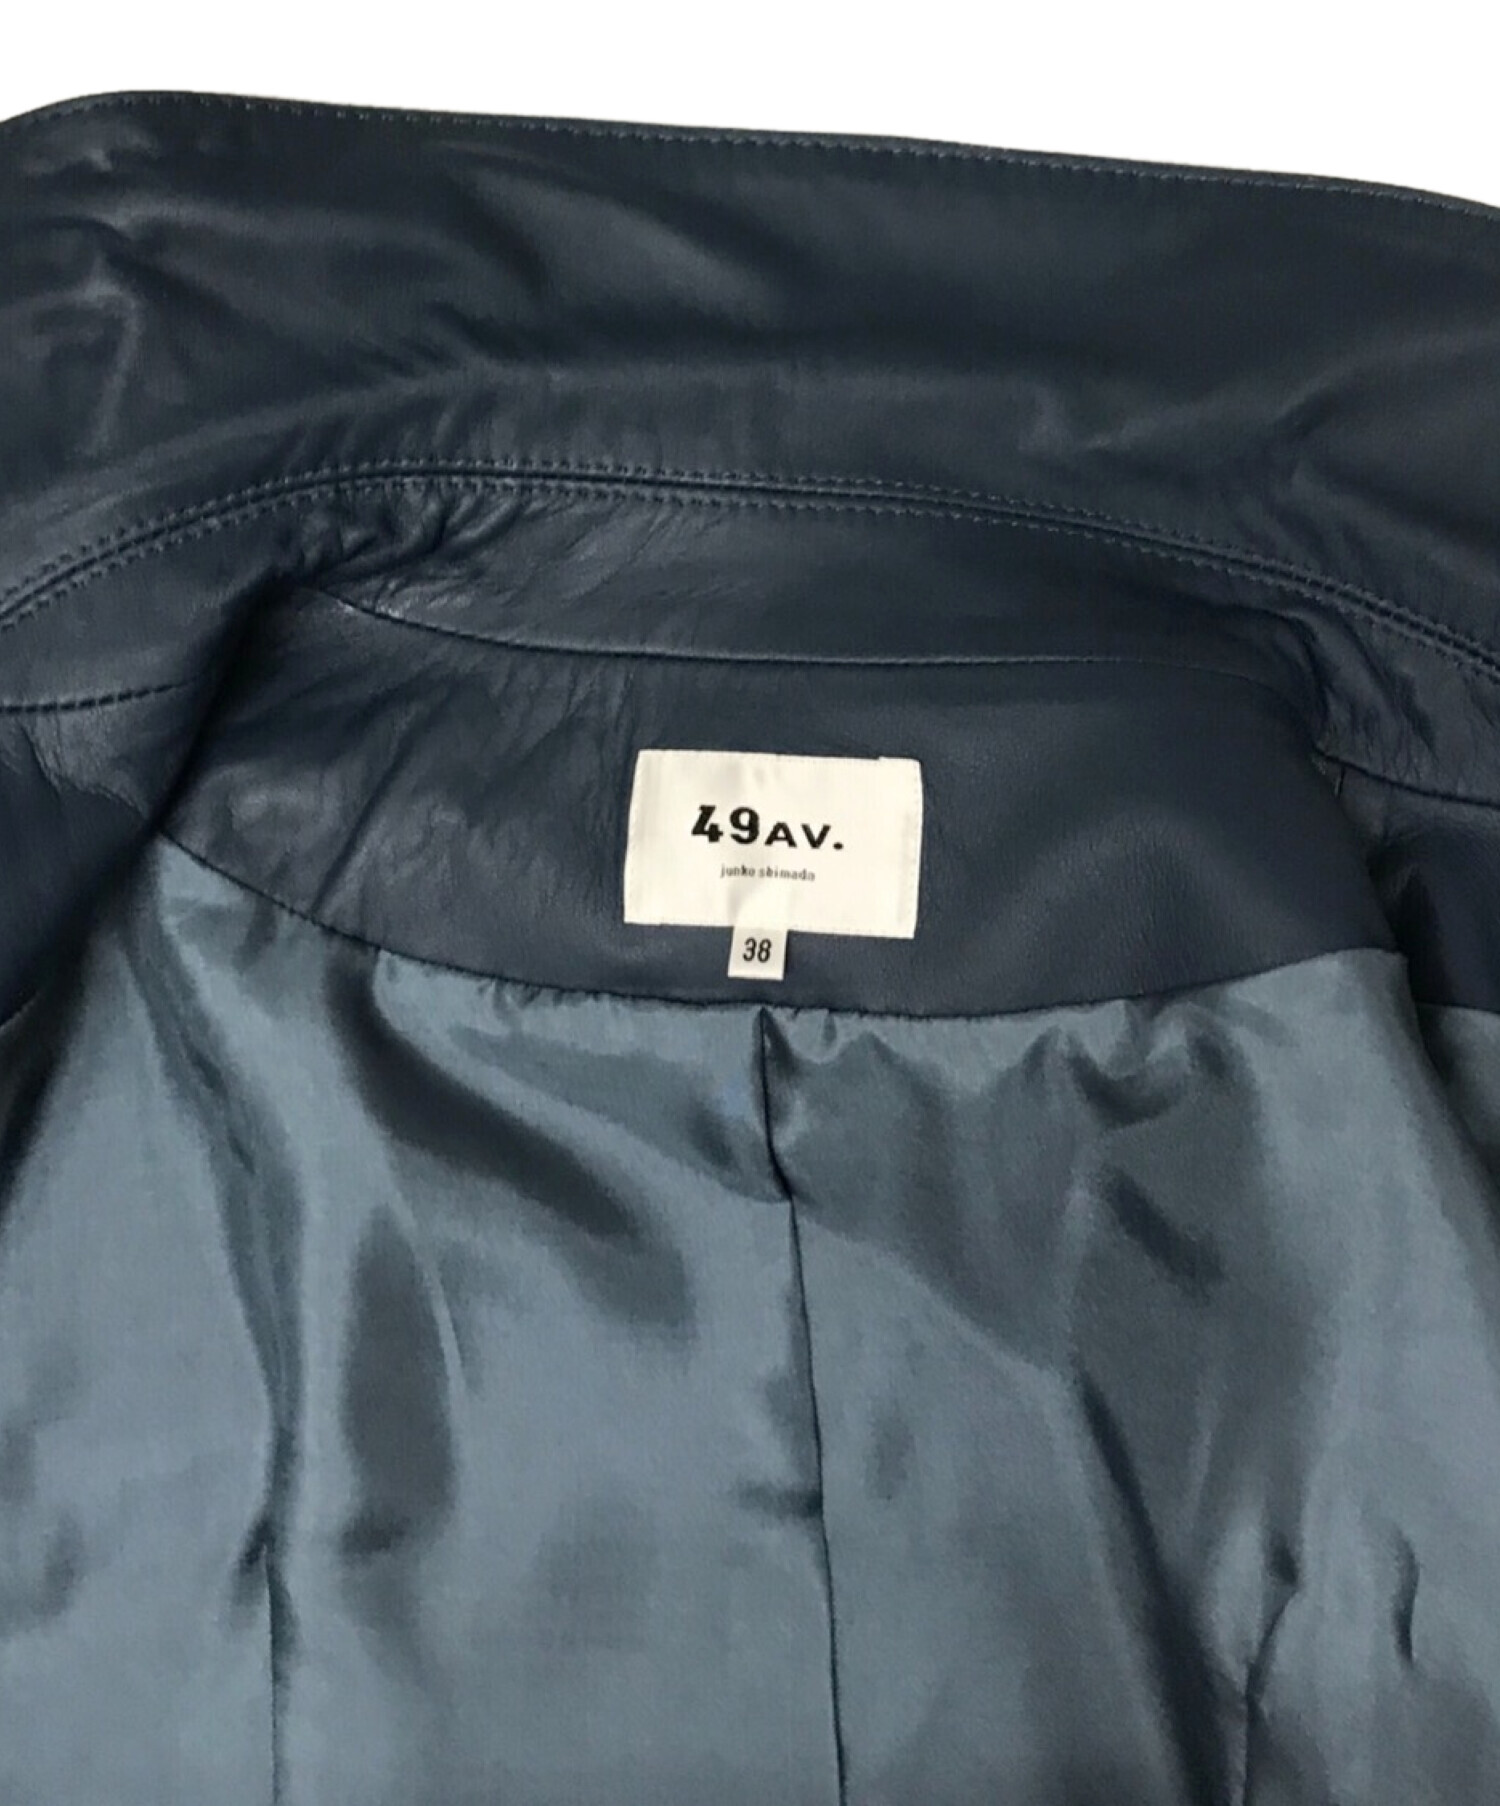 49AV junko shimada (ジュンコシマダ) ライダースジャケット ブルー サイズ:38